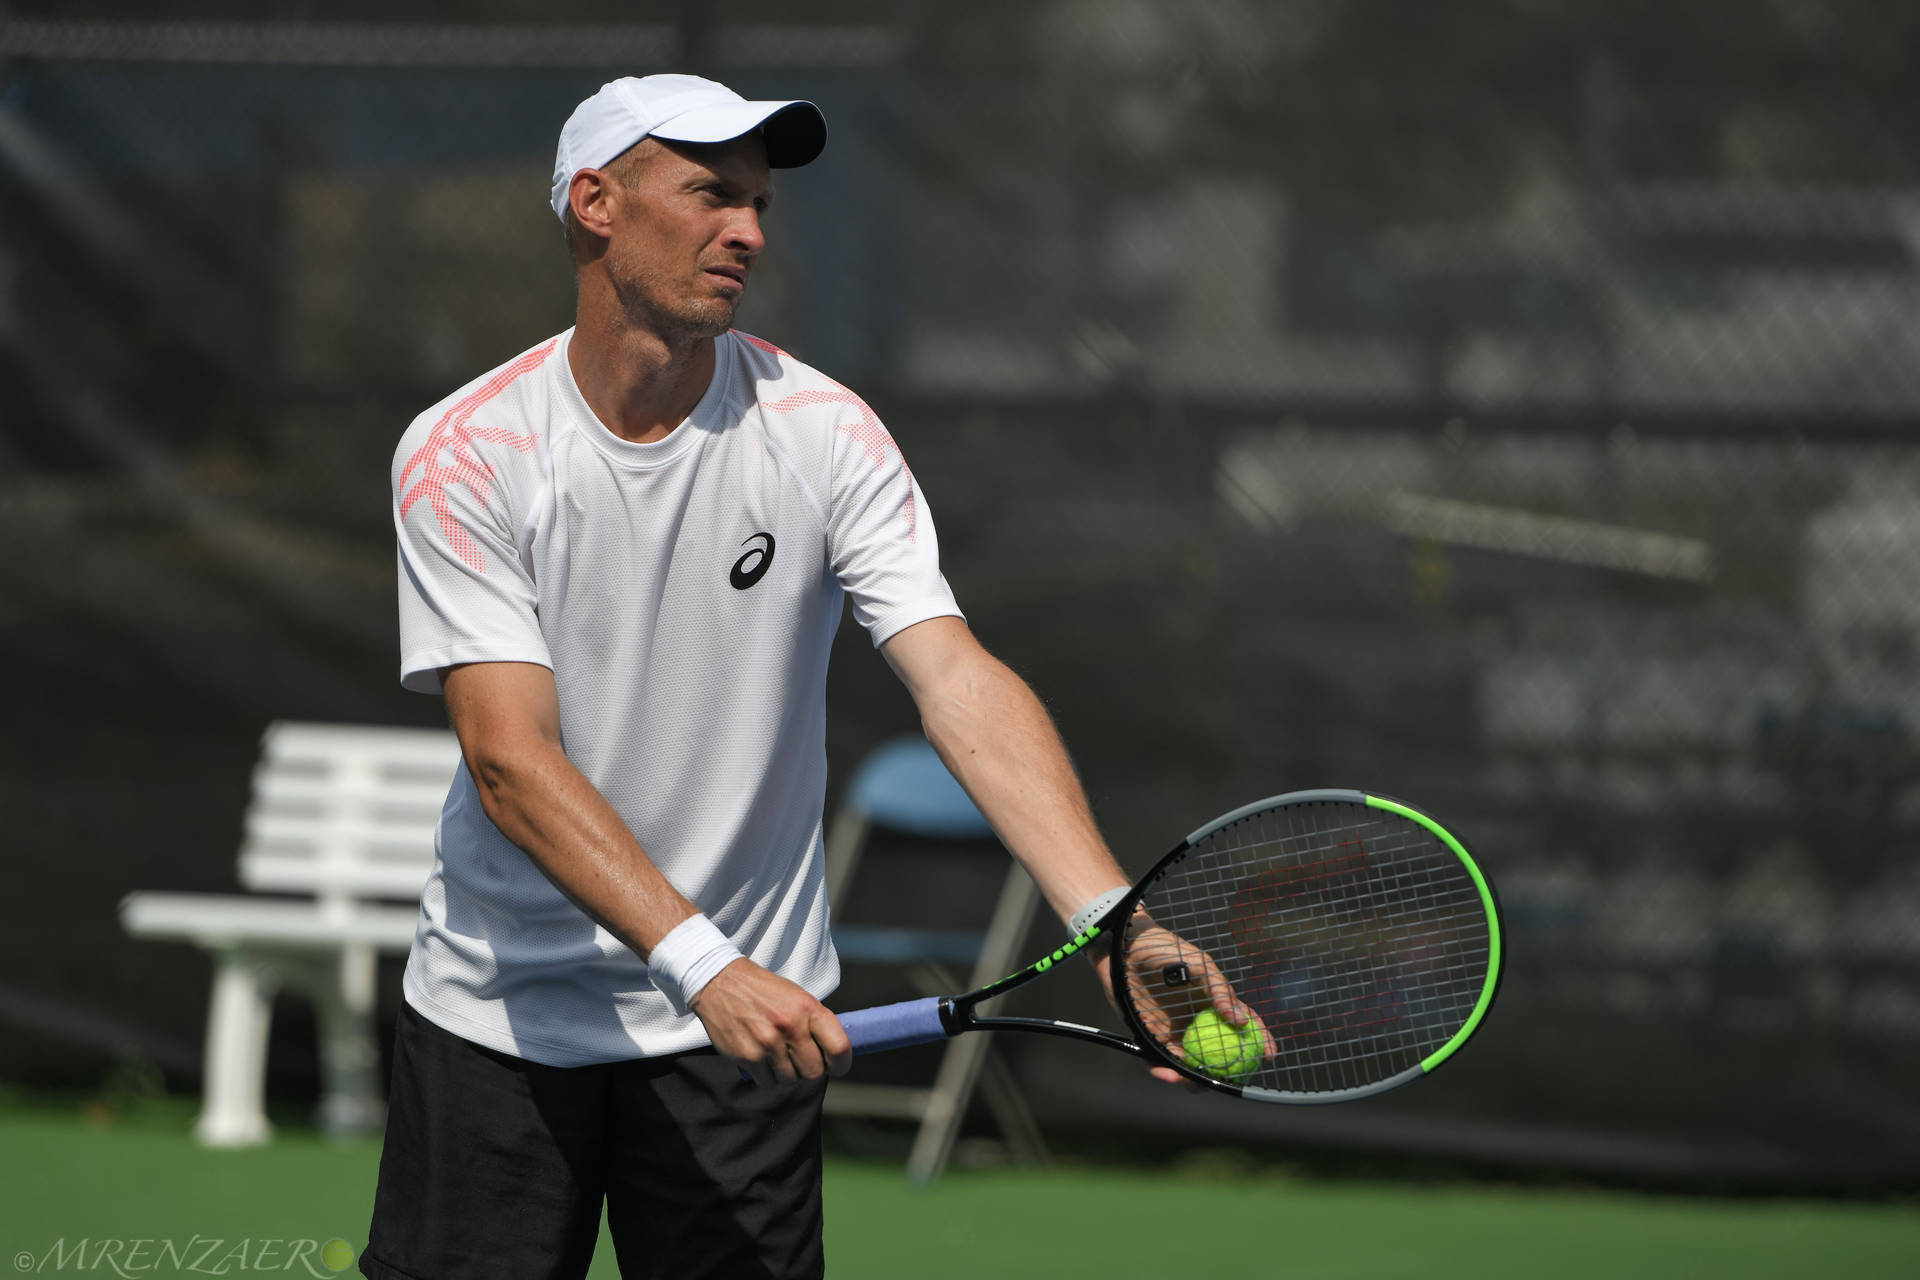 Campionatodi Tennis: Nikolay Davydenko Si Prepara Per Il Servizio Sfondo